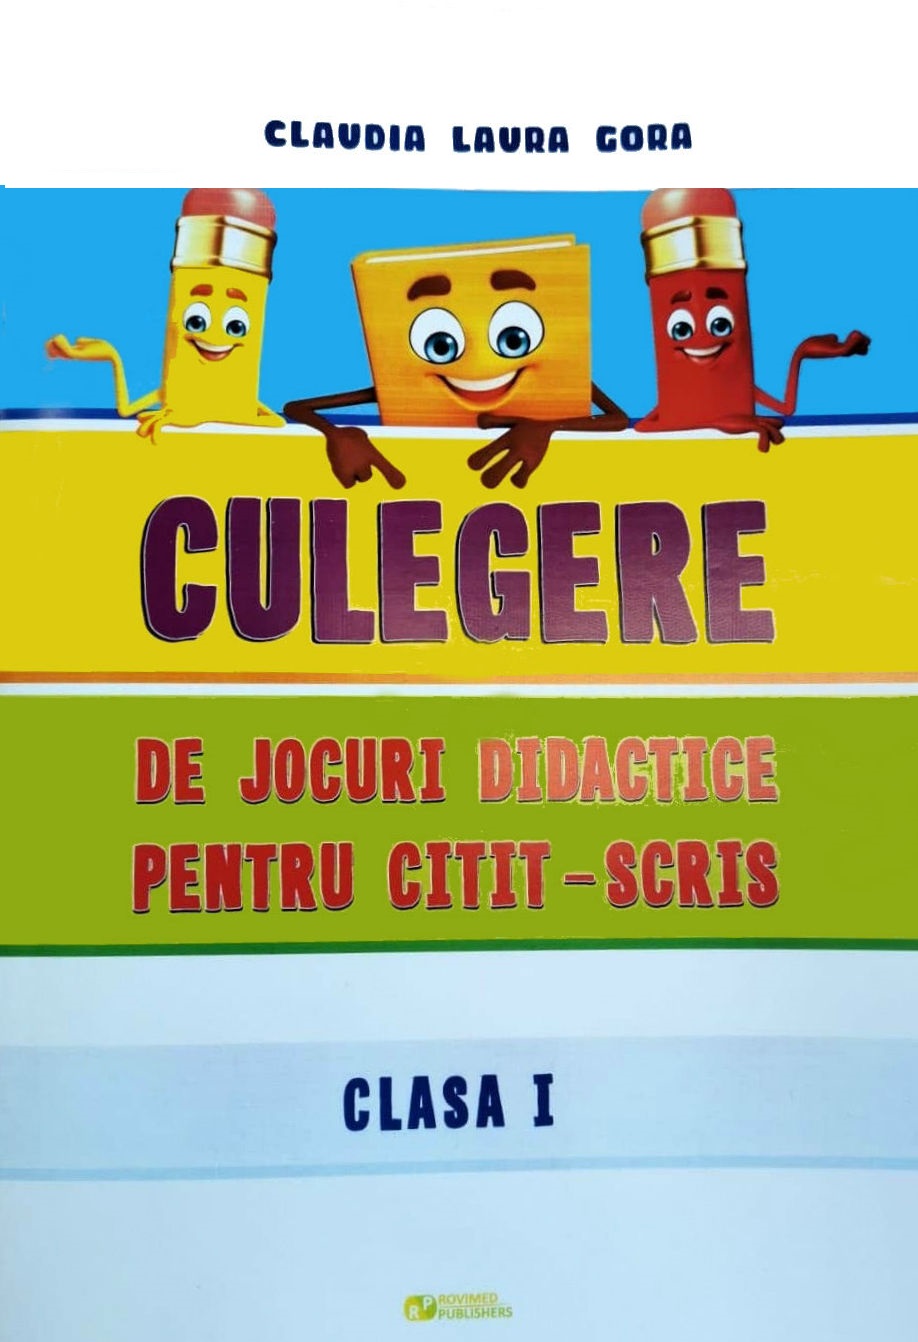 Culegere de jocuri didactice pentru citit-scris - Clasa 1 - Claudia Laura Gora, Mirela Elena Leonte